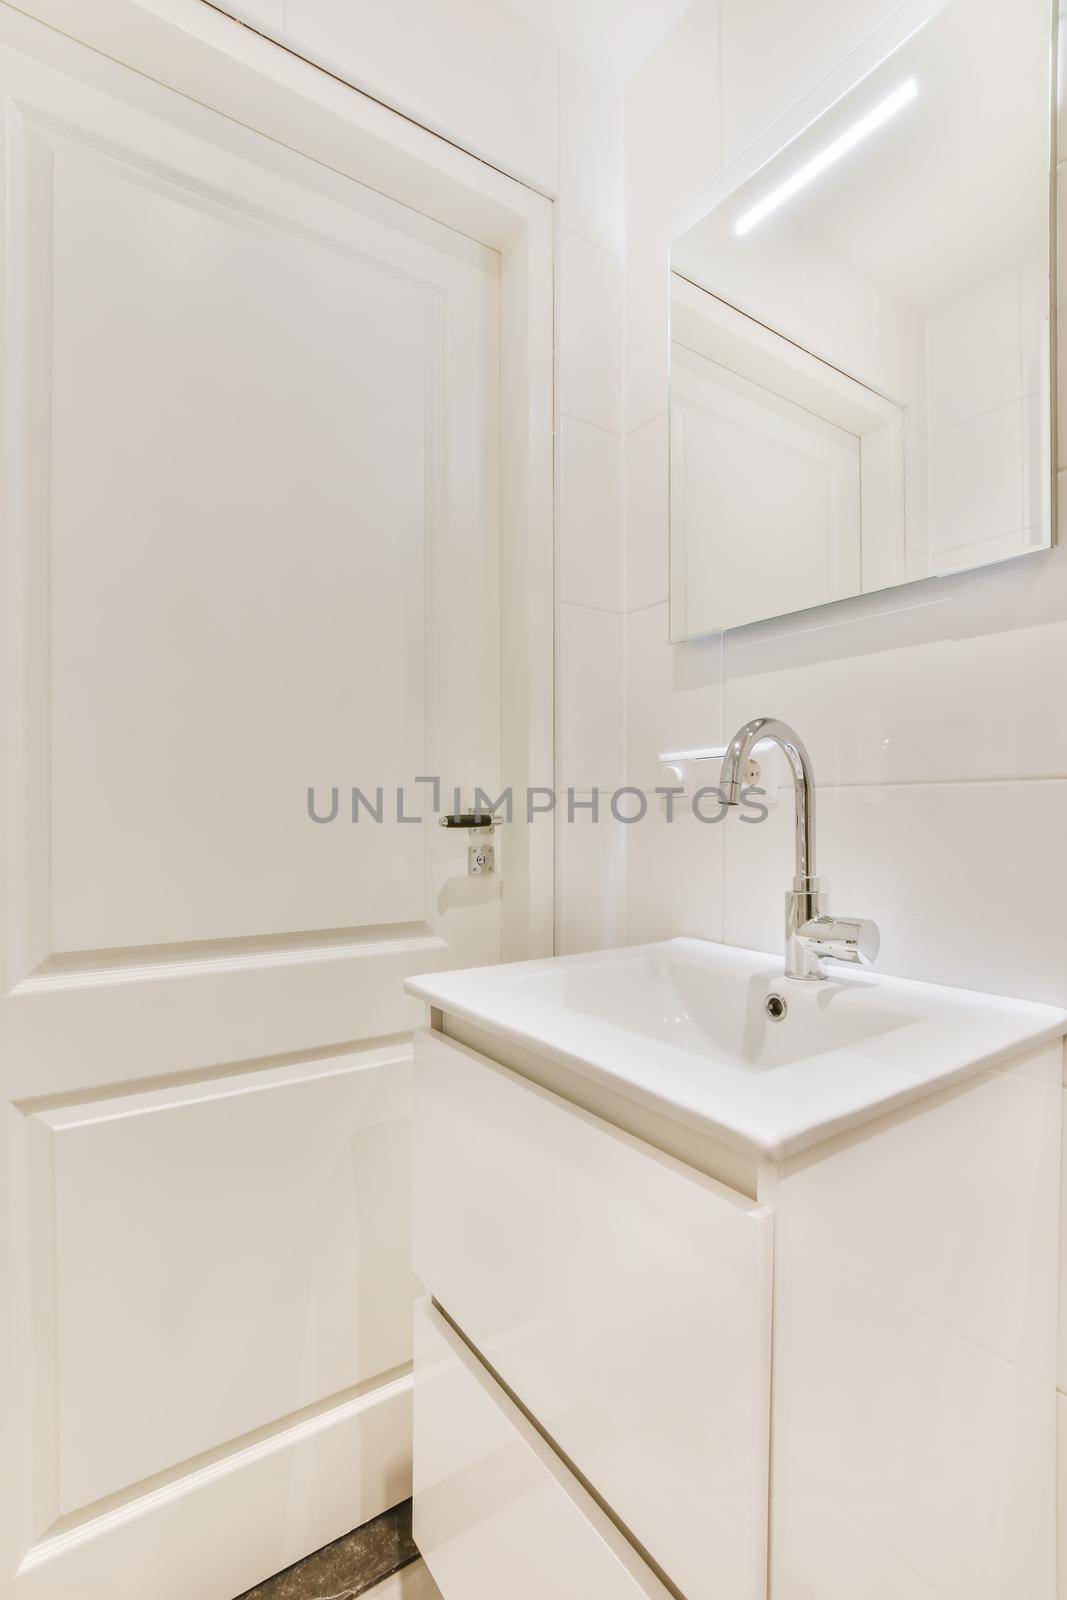 An all-white bathroom in an elegant apartment